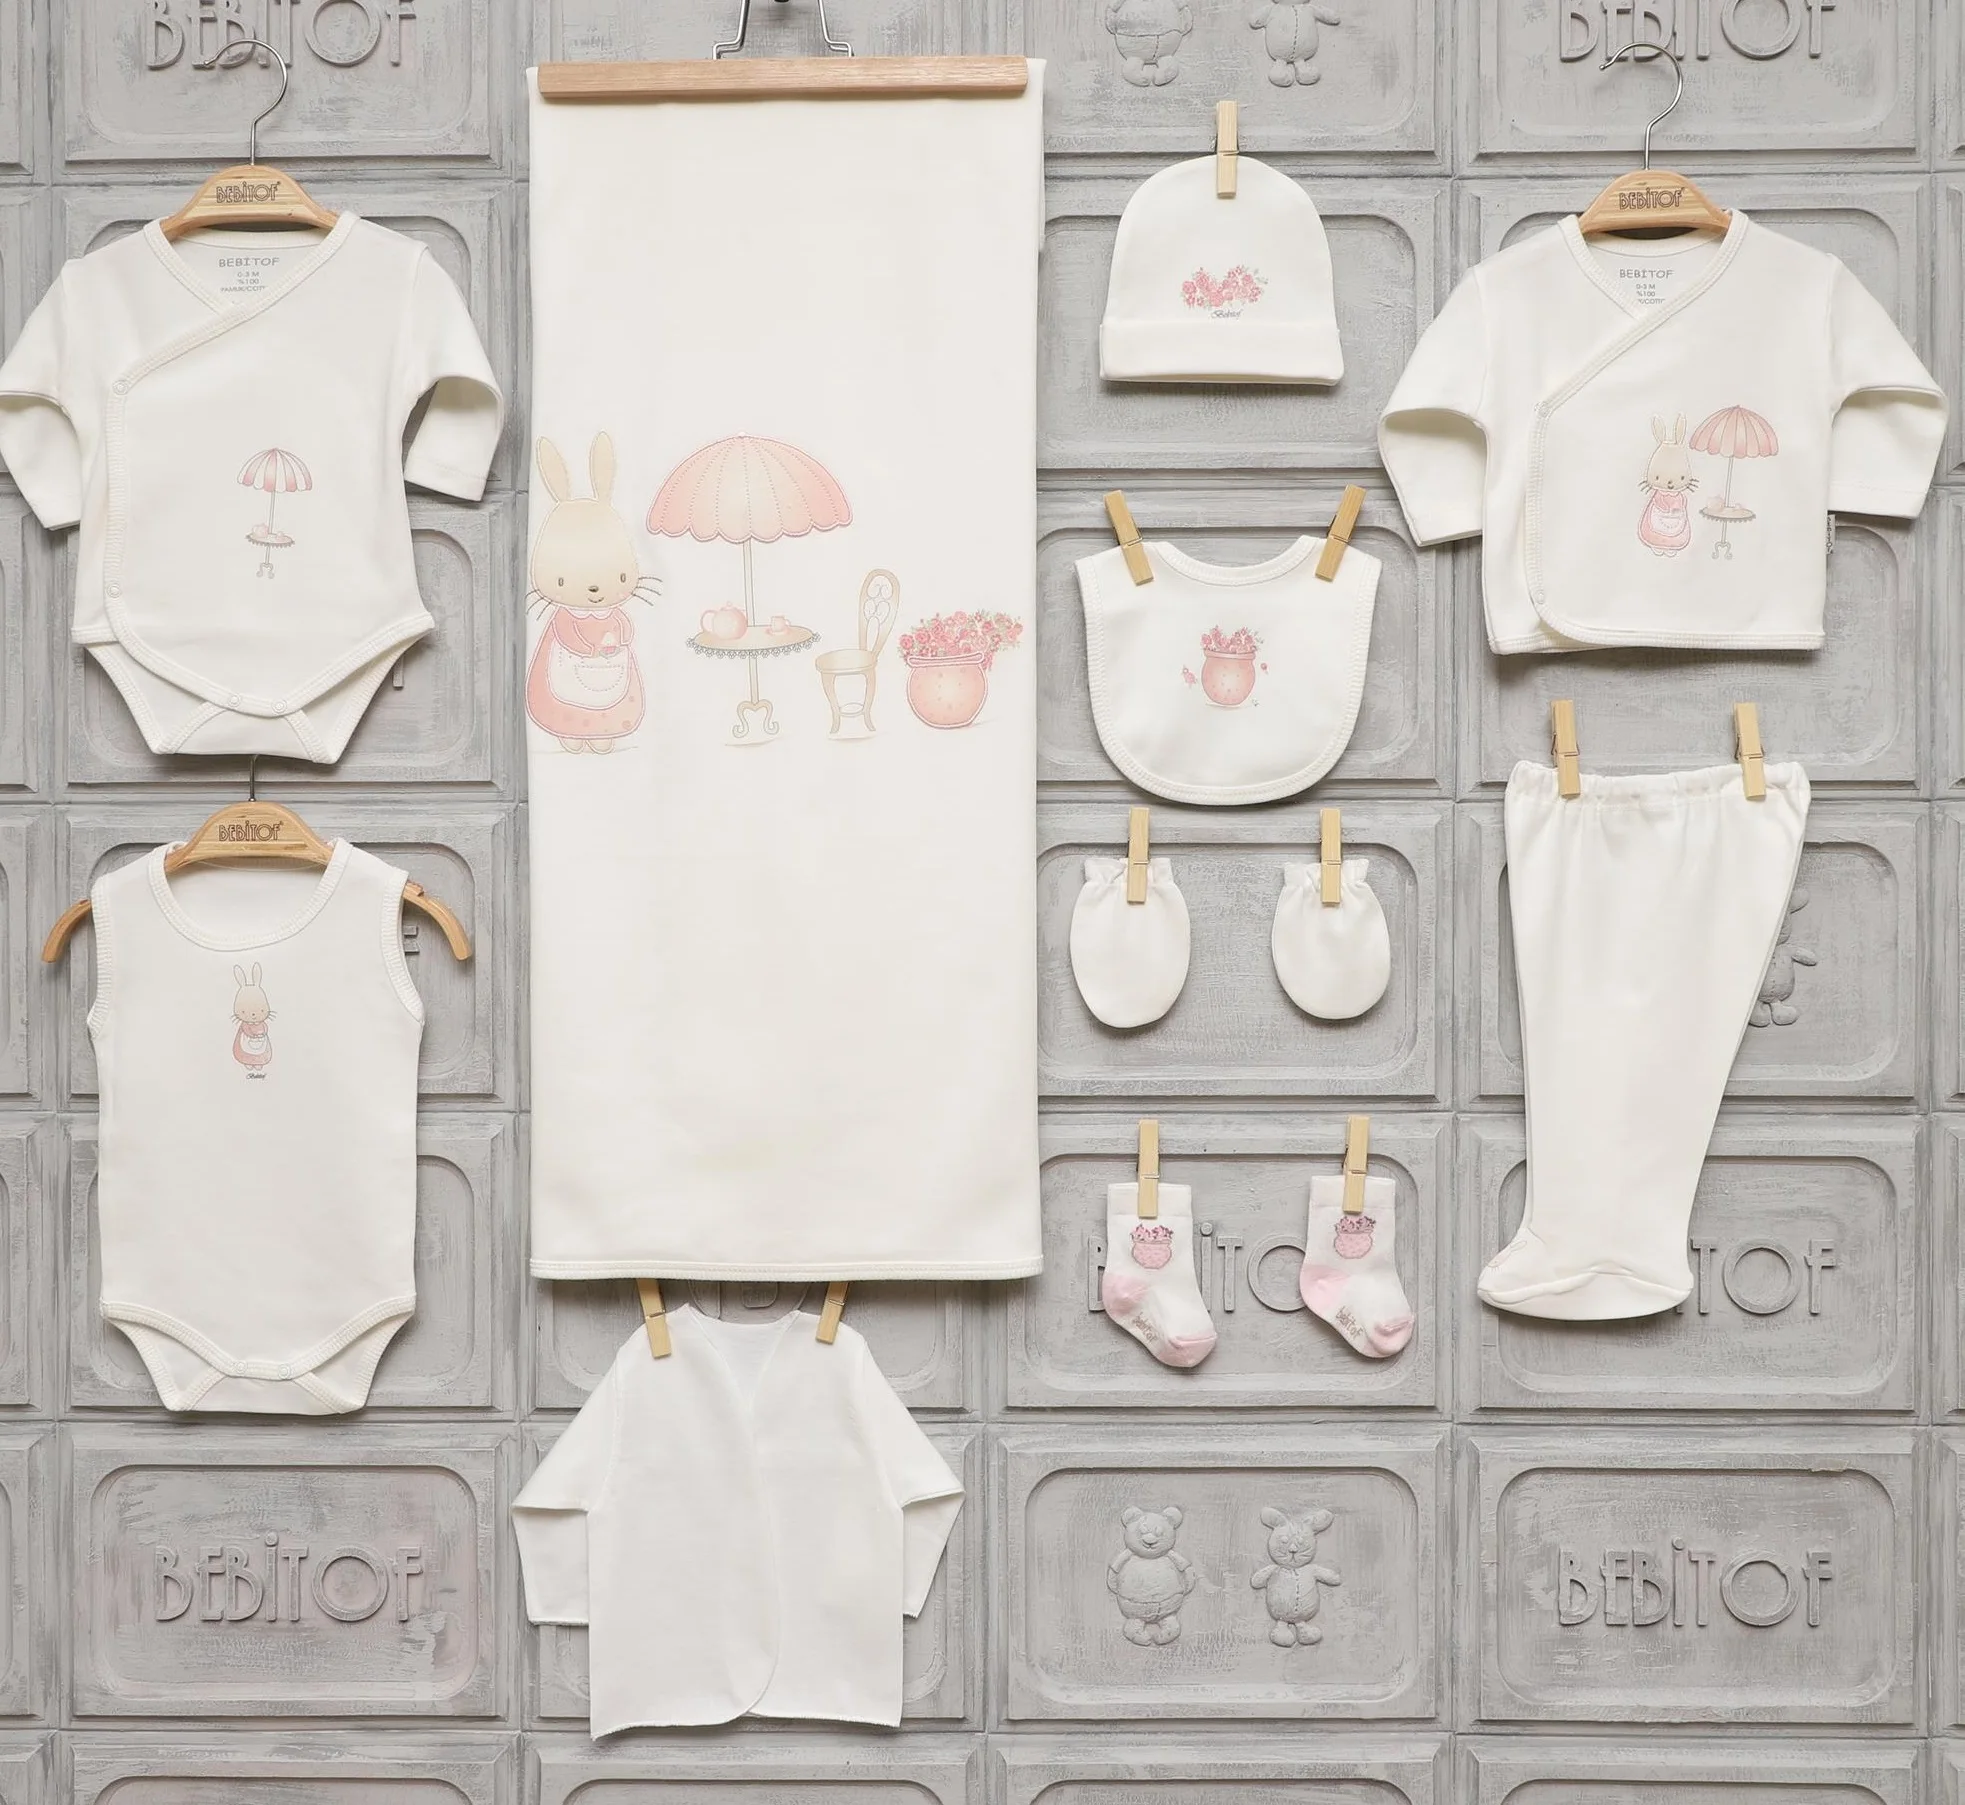 Комплект из 10 предметов Bebitof для новорожденных девочек, хлопковый, на возраст 0-3 месяцев от AliExpress RU&CIS NEW